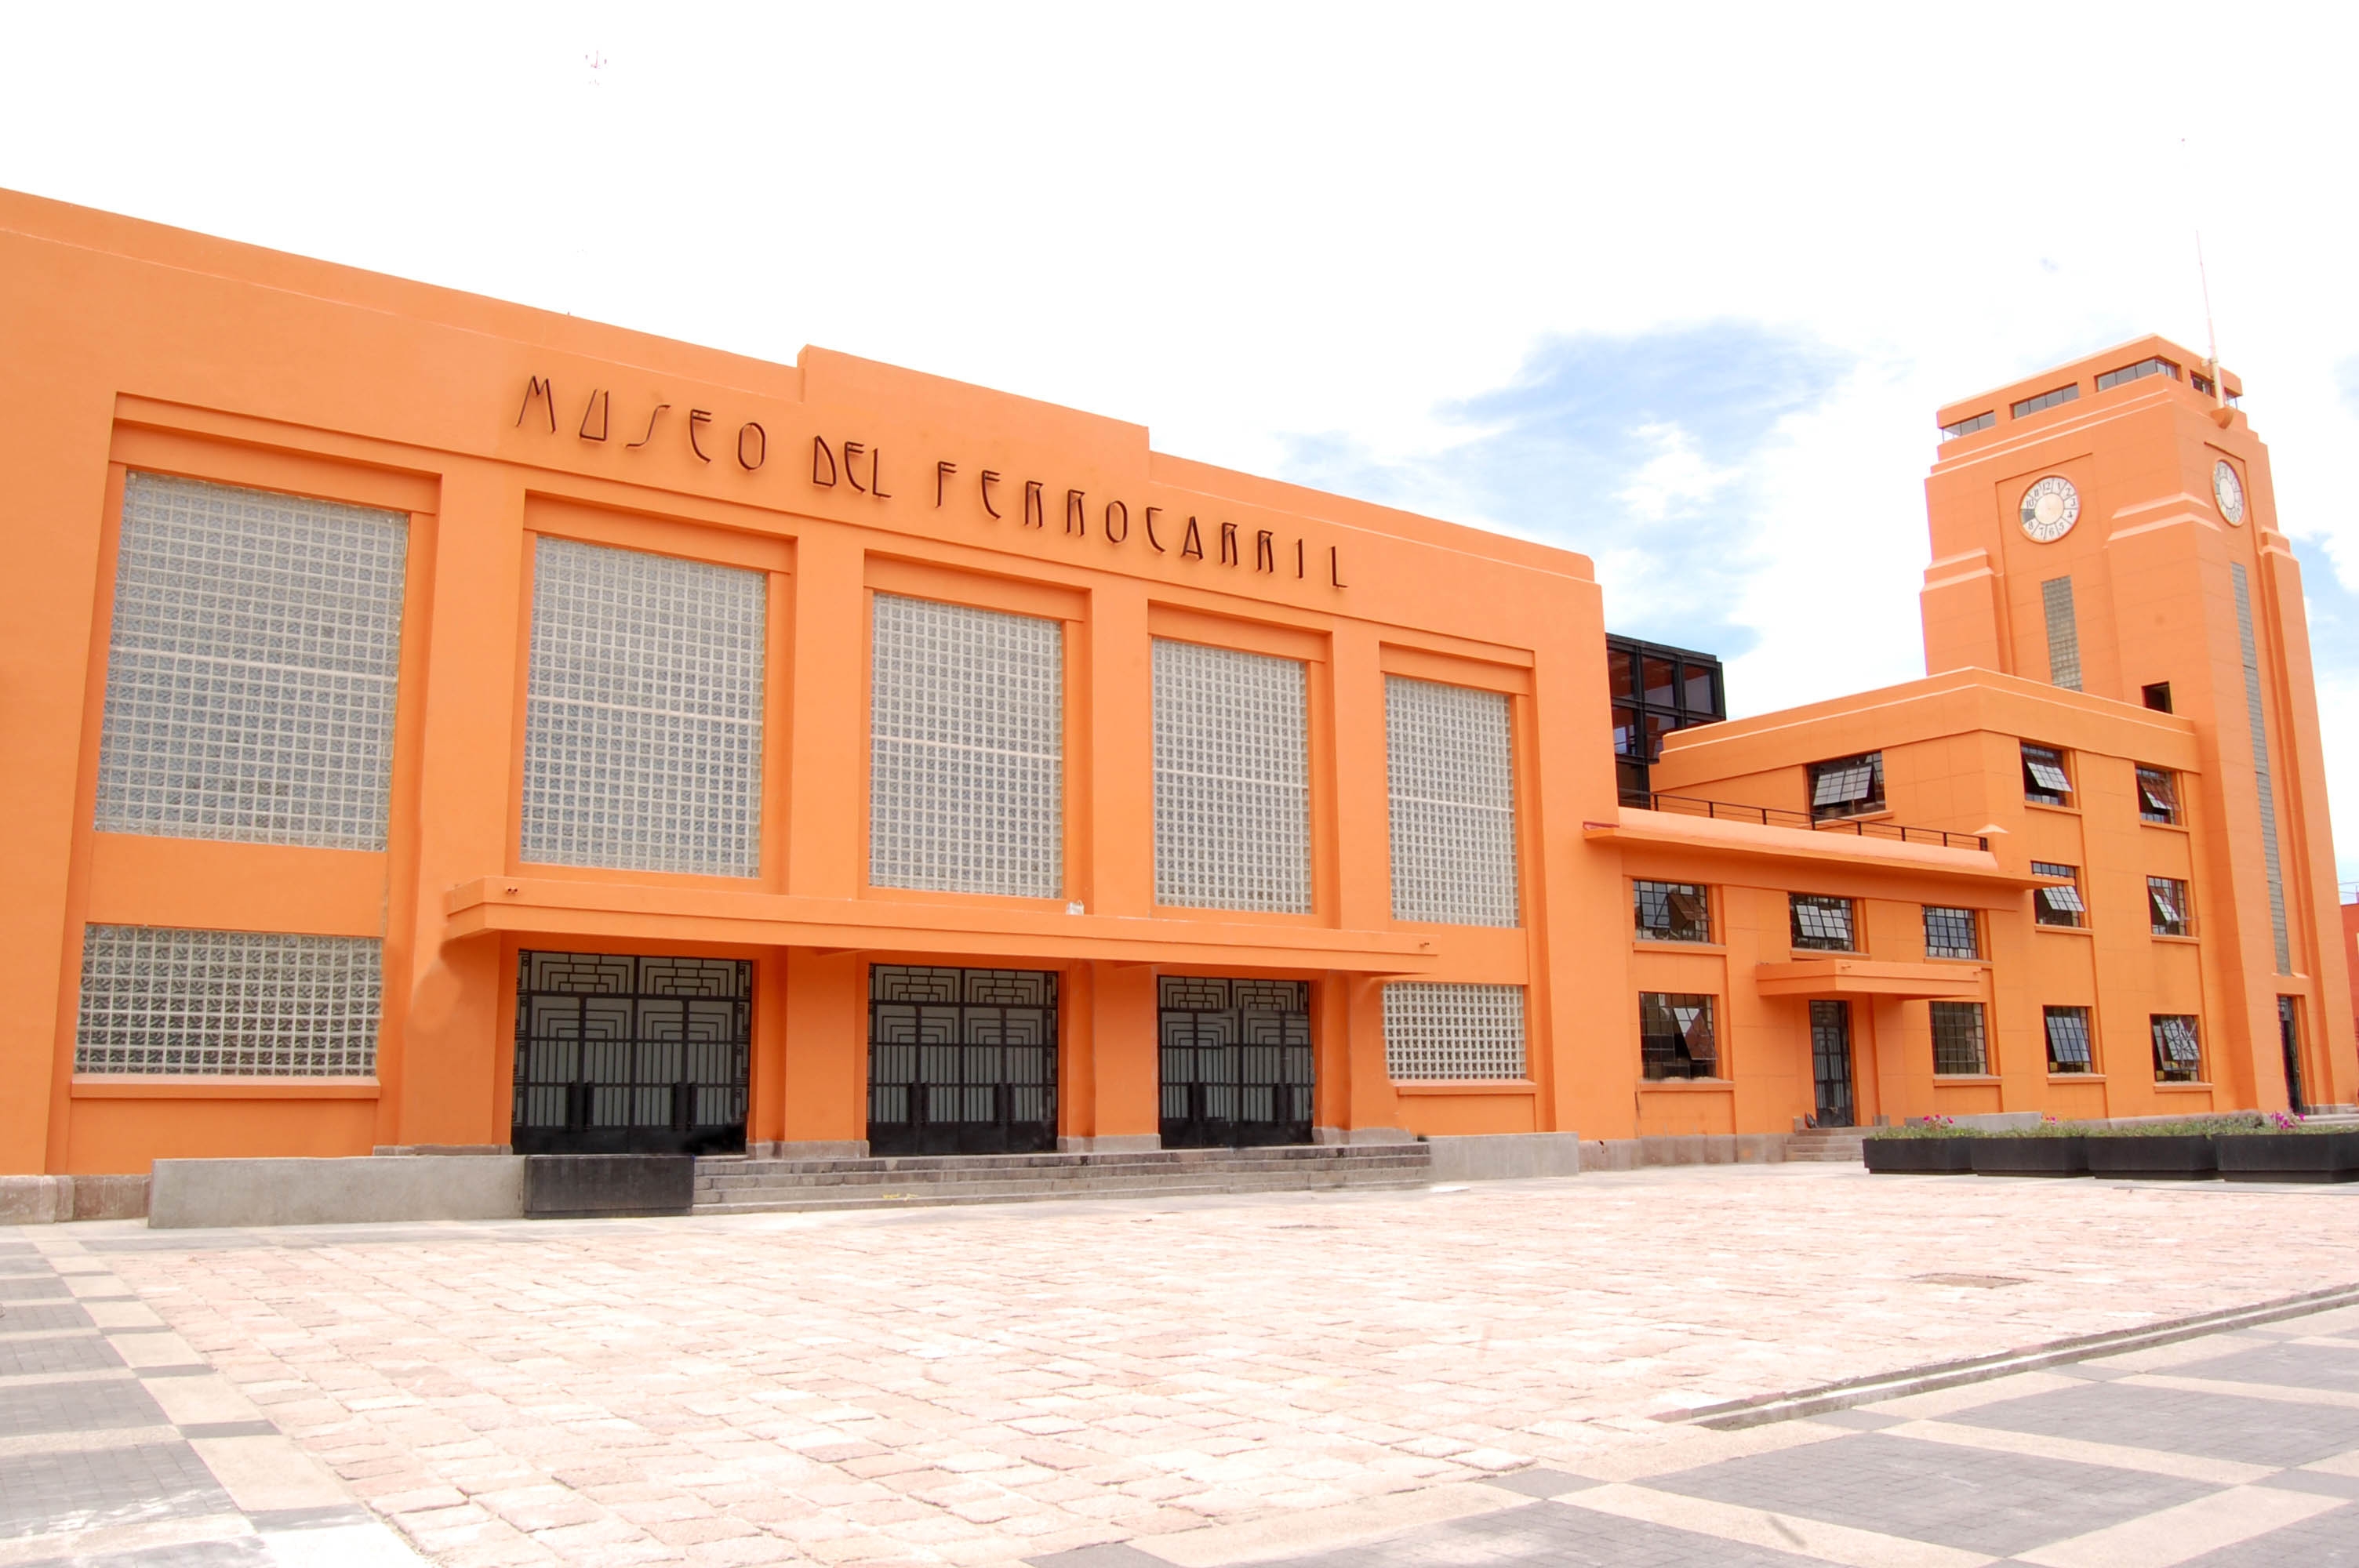  Difamación quitó a Acevedo Oliva oportunidad de empleo… en Guanajuato, aduce